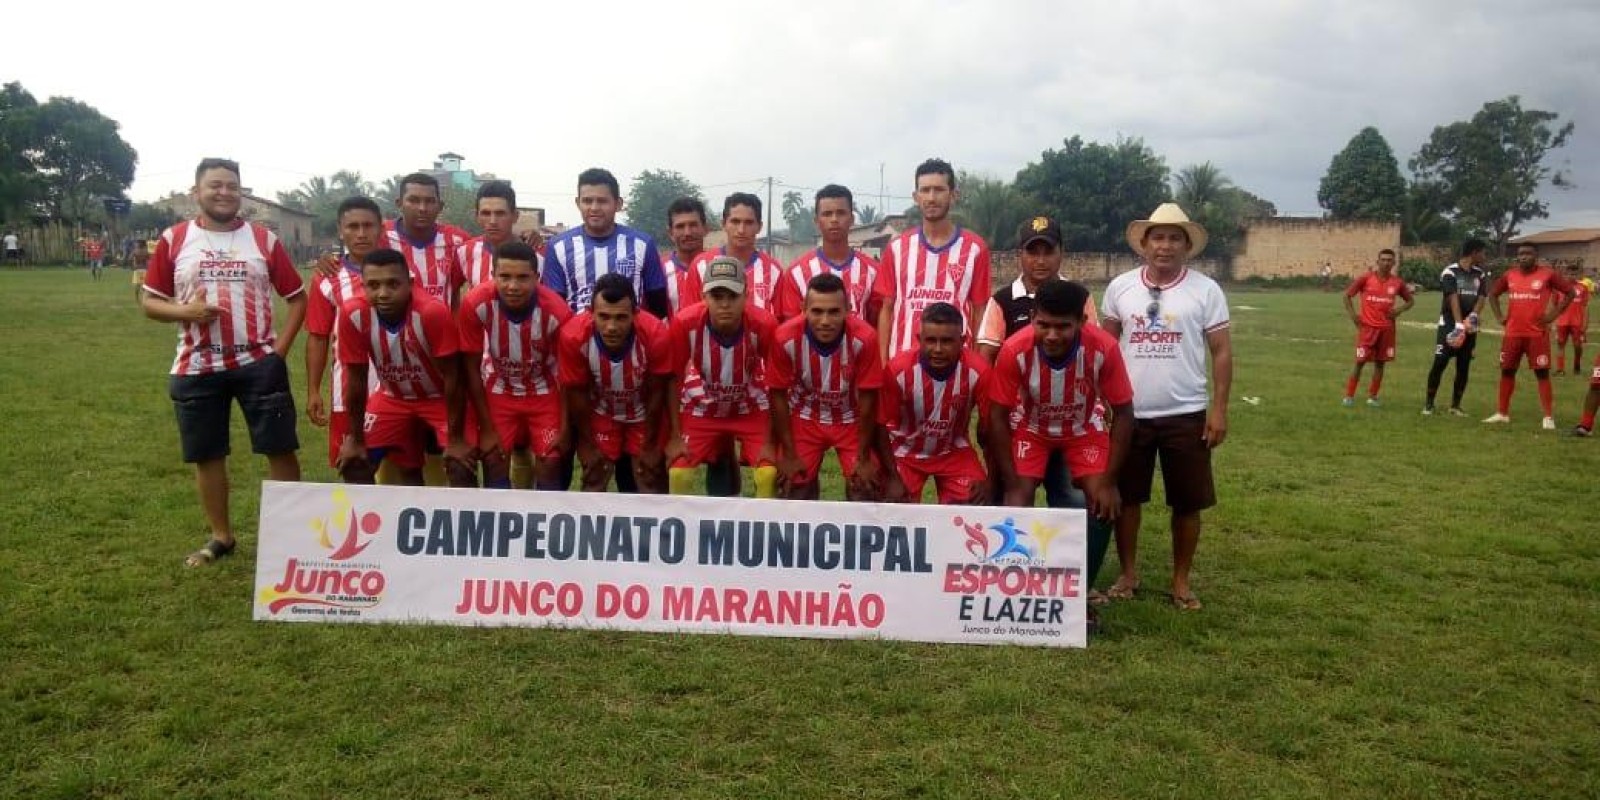 Campeonato Municipal de Futebol de Junco do Maranhão movimenta equipes